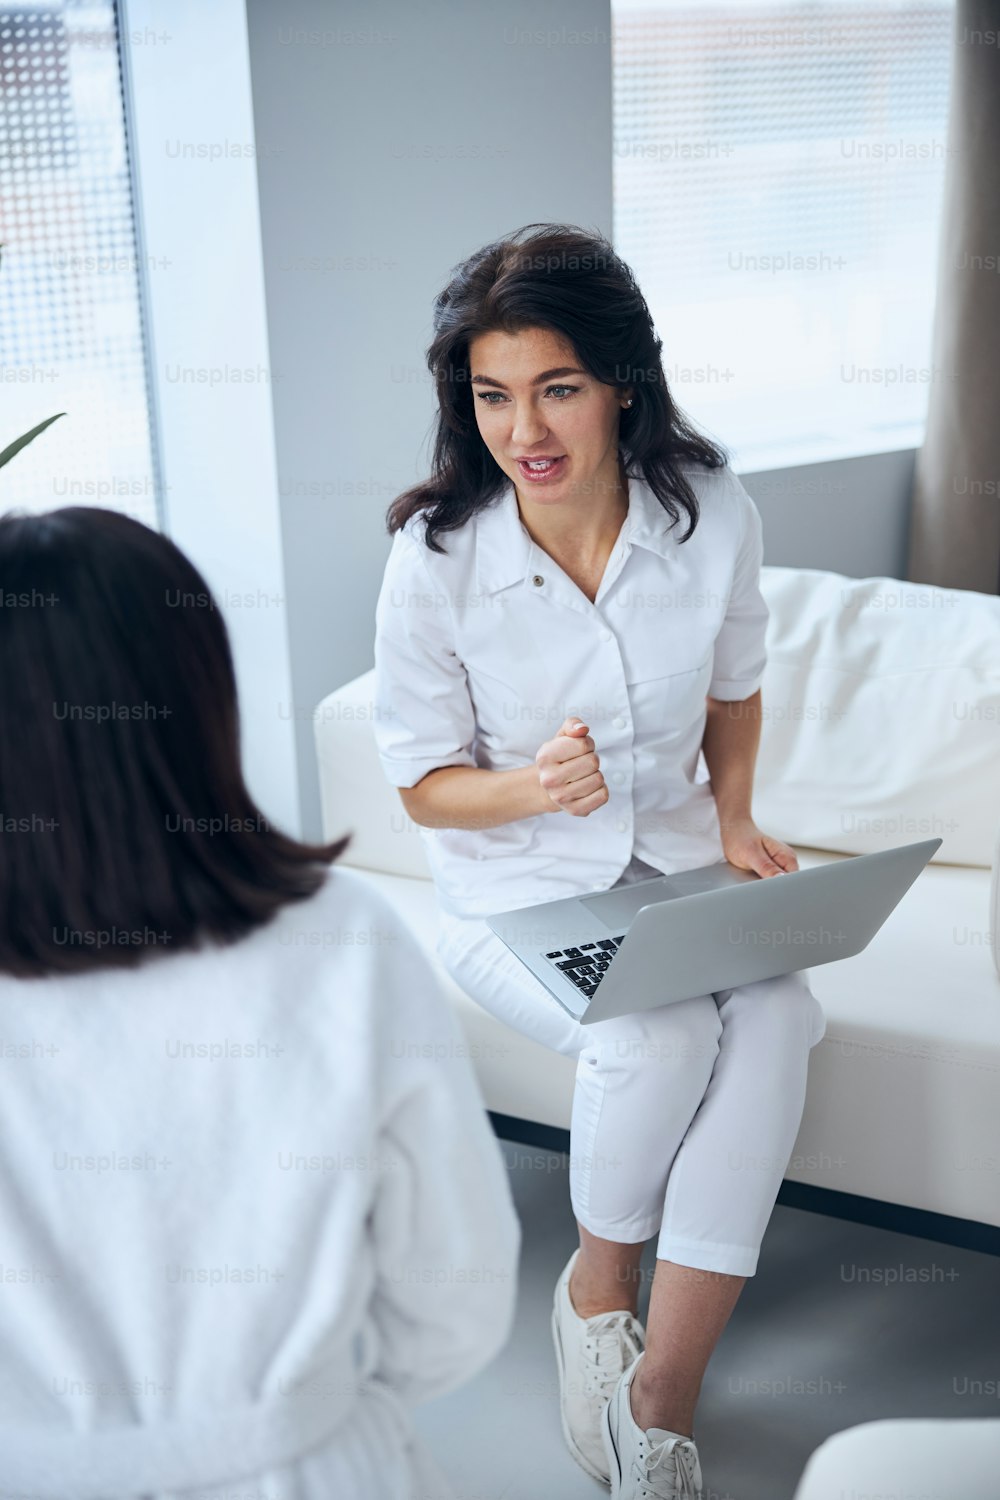 Une travailleuse de la santé concentrée avec un ordinateur portable sur les genoux interviewant une femme pendant la consultation